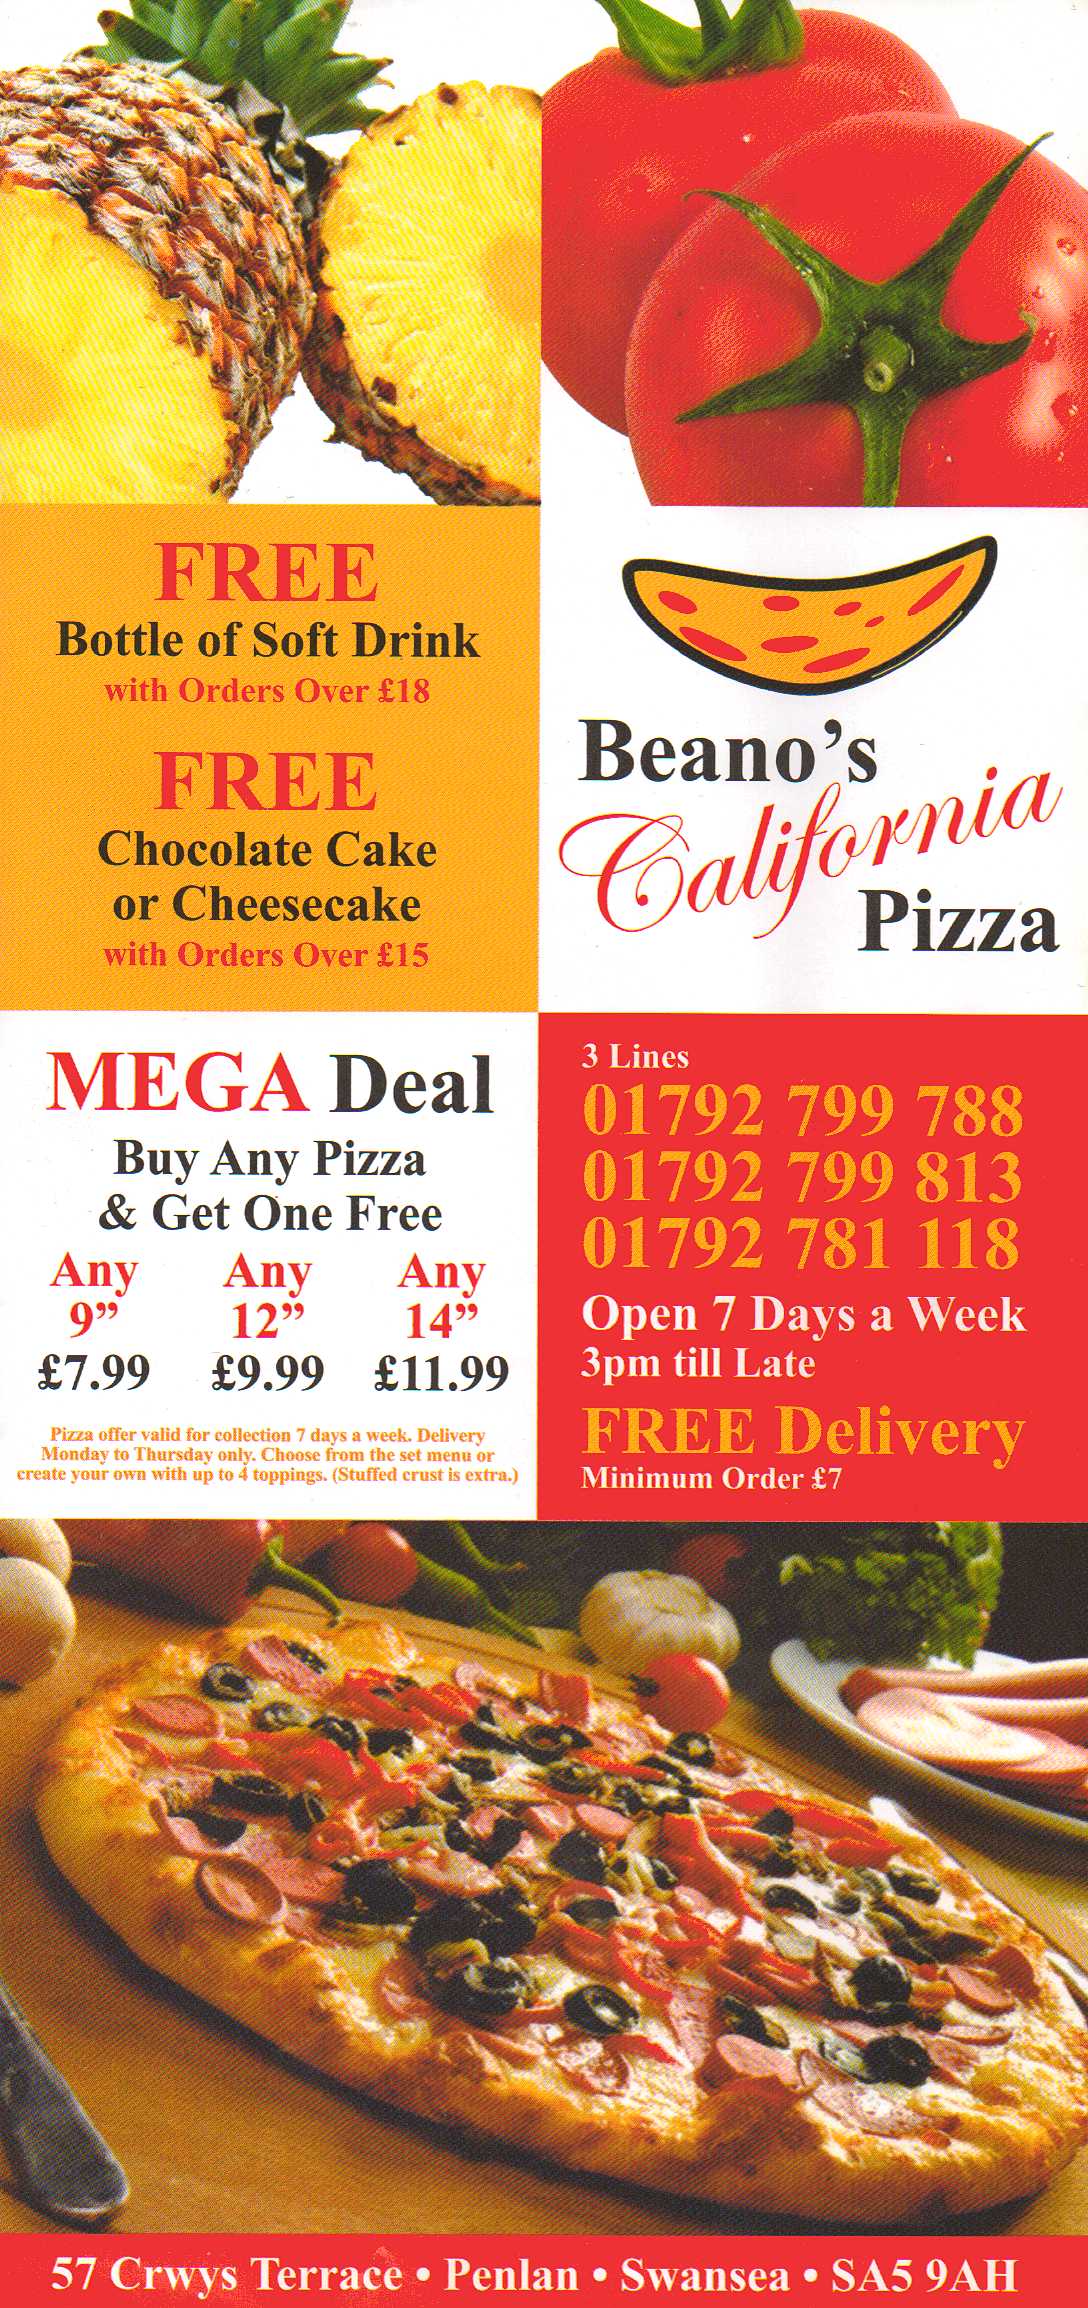 Beanos California Pizza